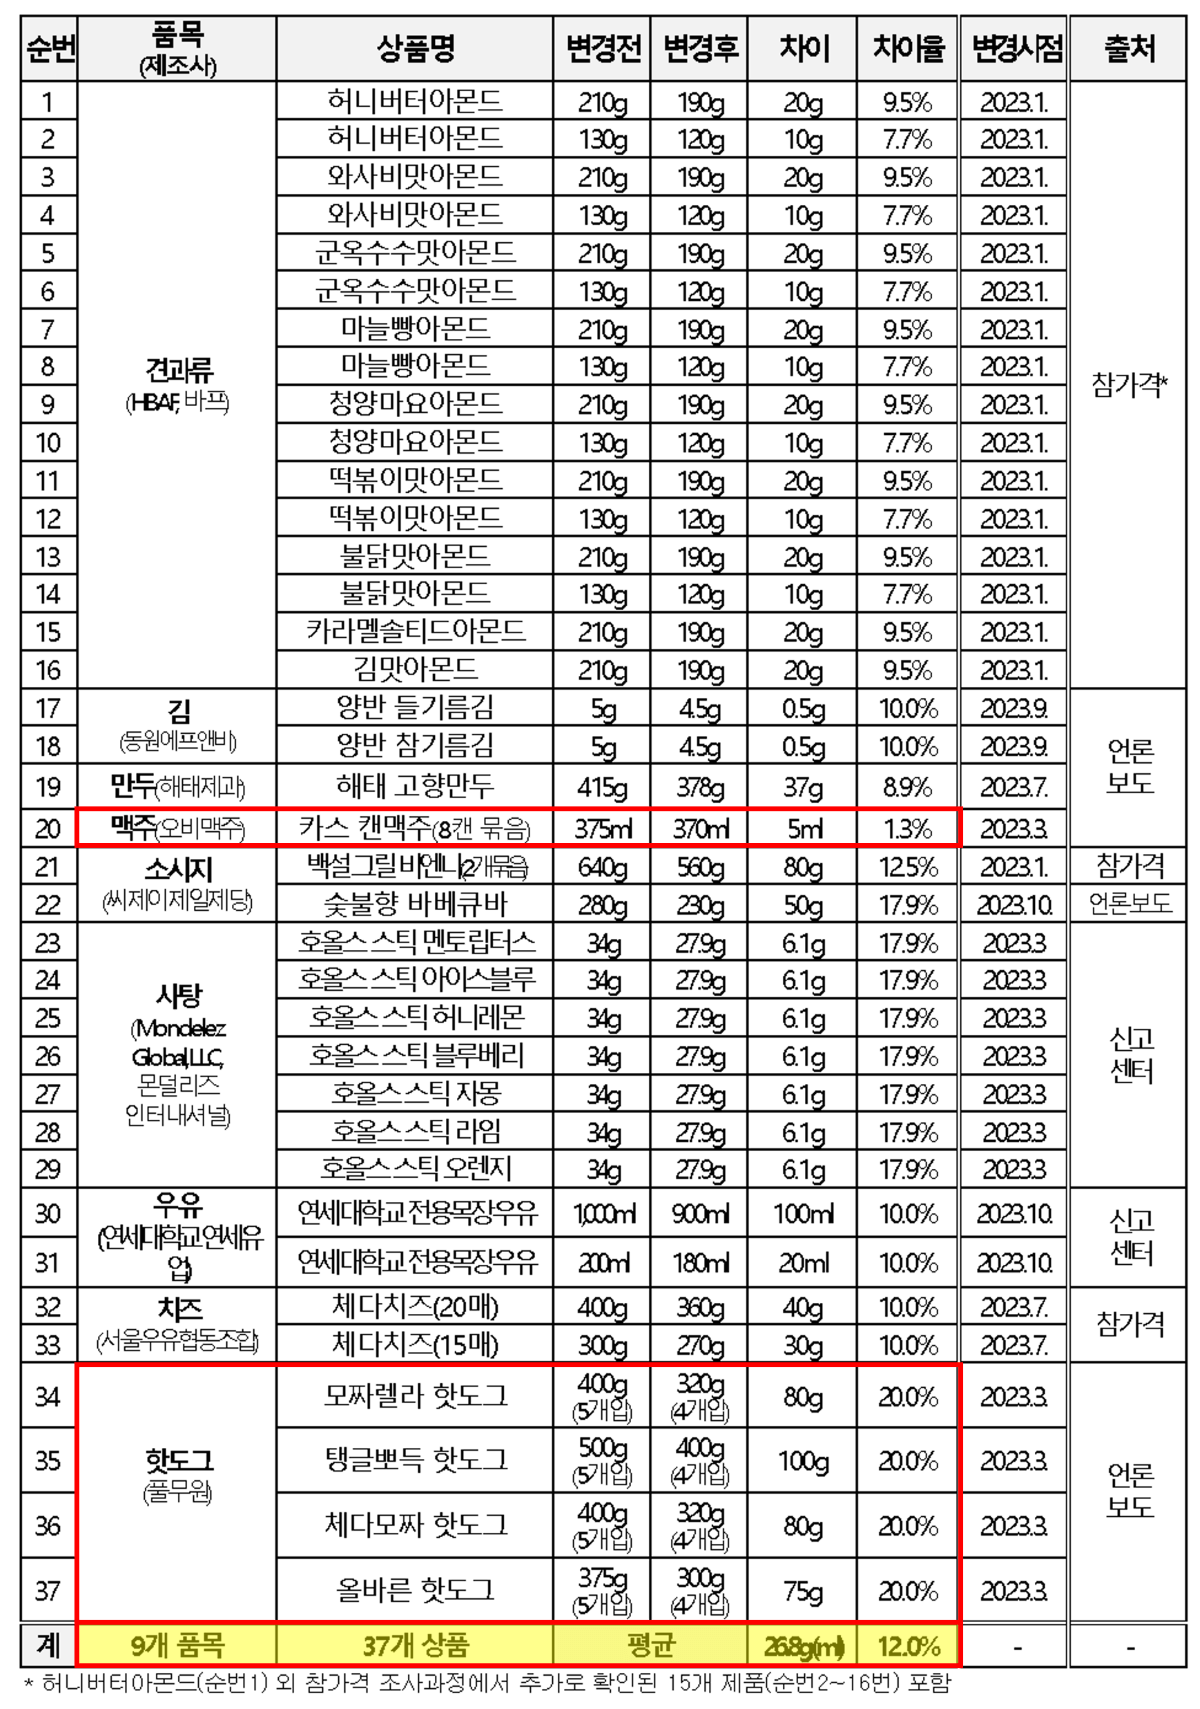 슈링크플레이션 사례-용량 변동 상품 목록-023.12.13 한국소비자원 보도자료 출처